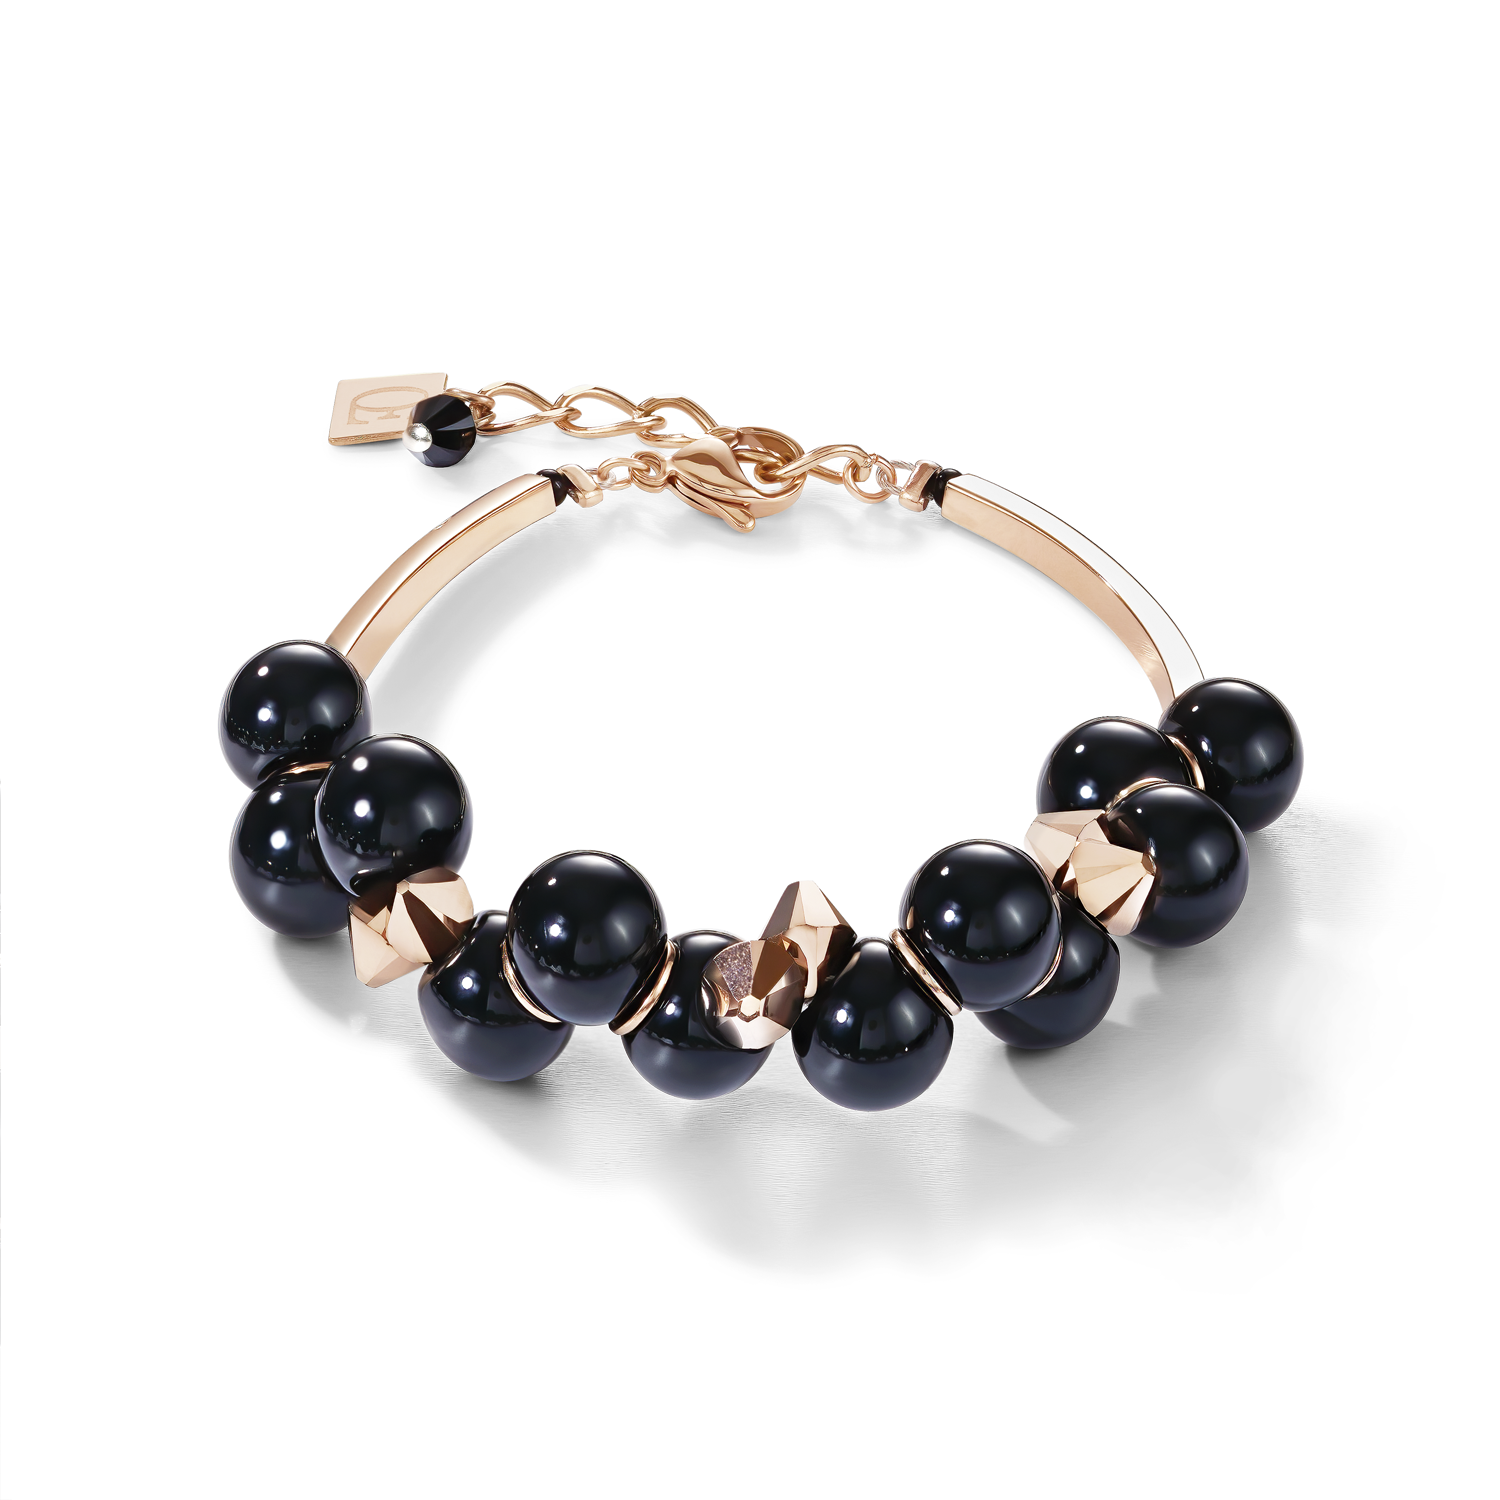 Bracelet verre acrylique noir & Cristaux  or rose